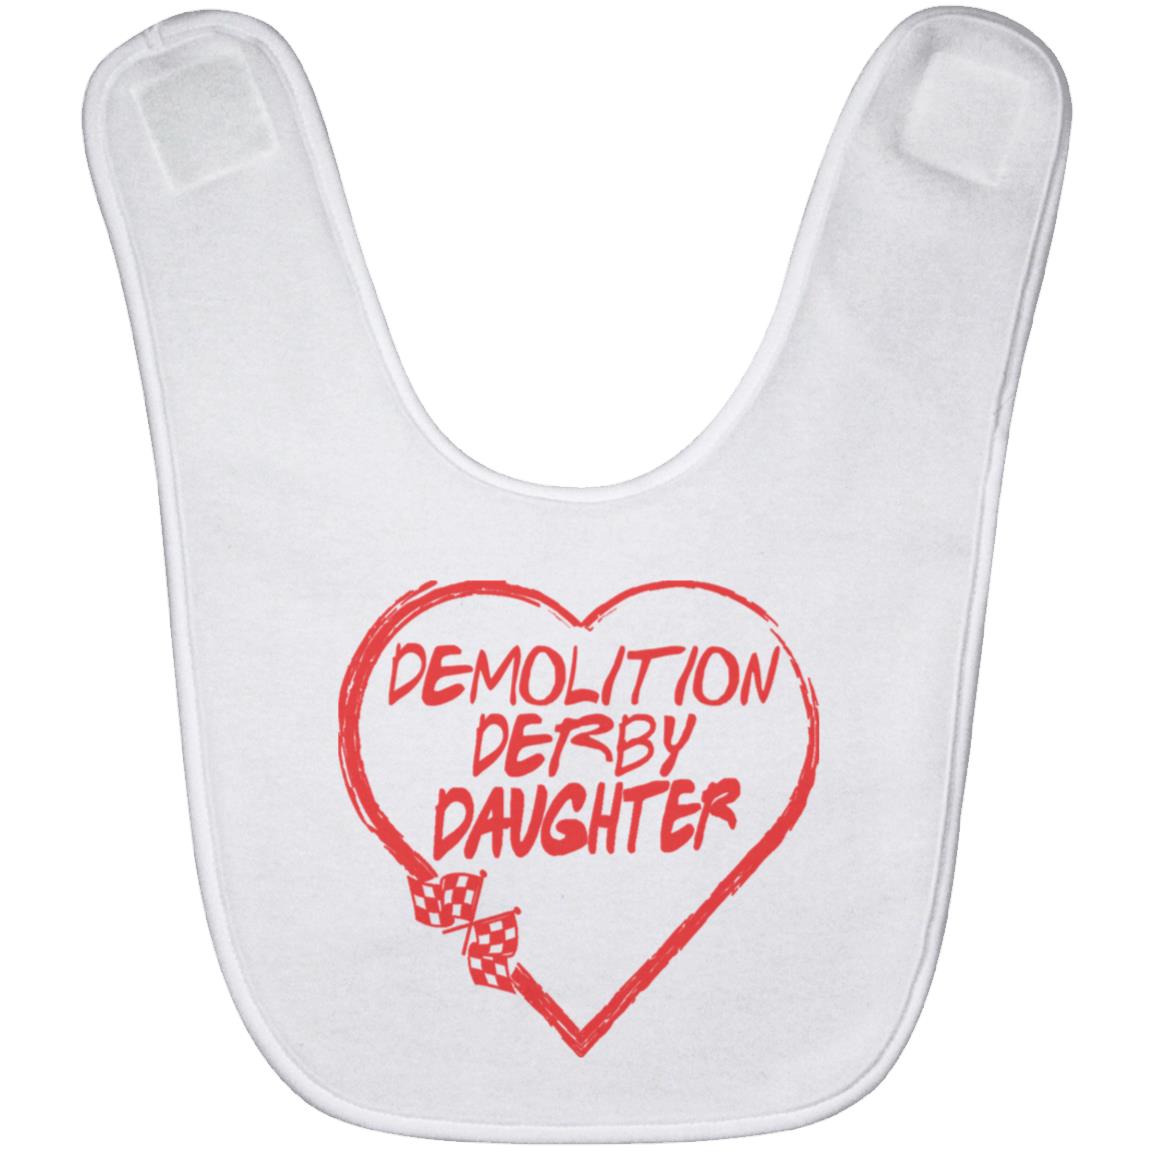 Demolition Derby Daughter Heart Baby Bib